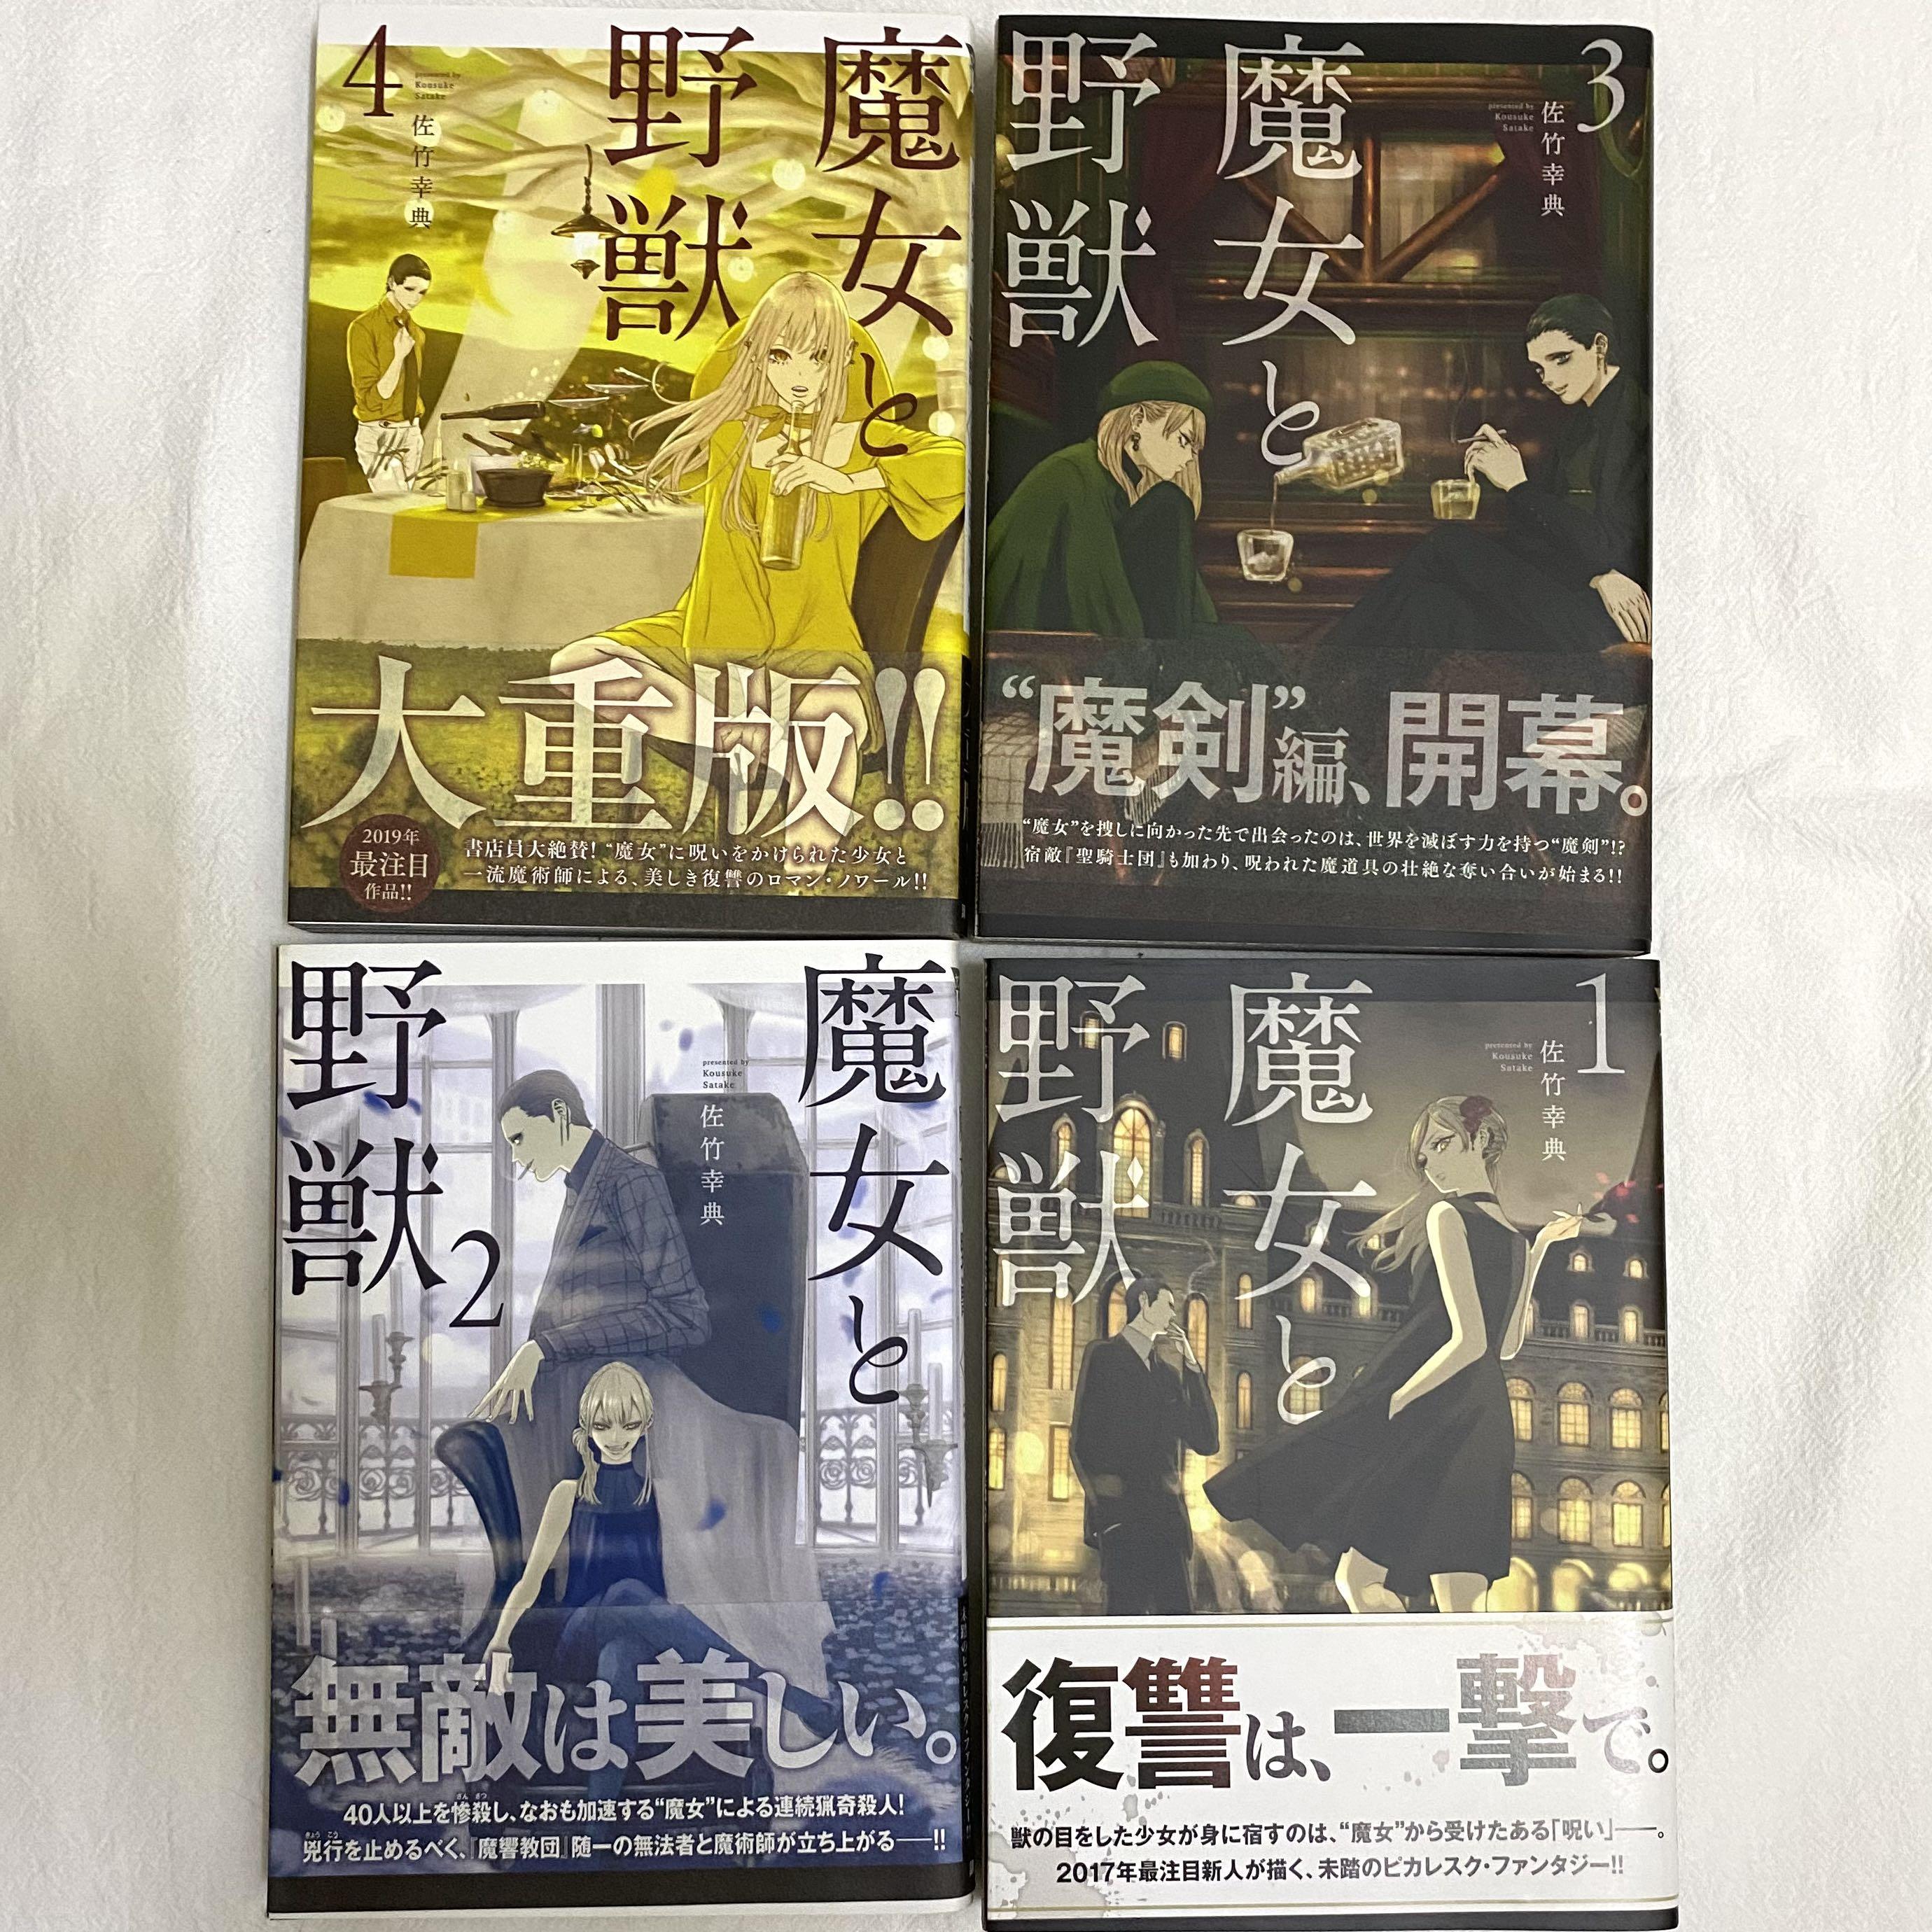 魔女と野獣 1 4 By 佐竹幸典 Books Stationery Comics Manga On Carousell